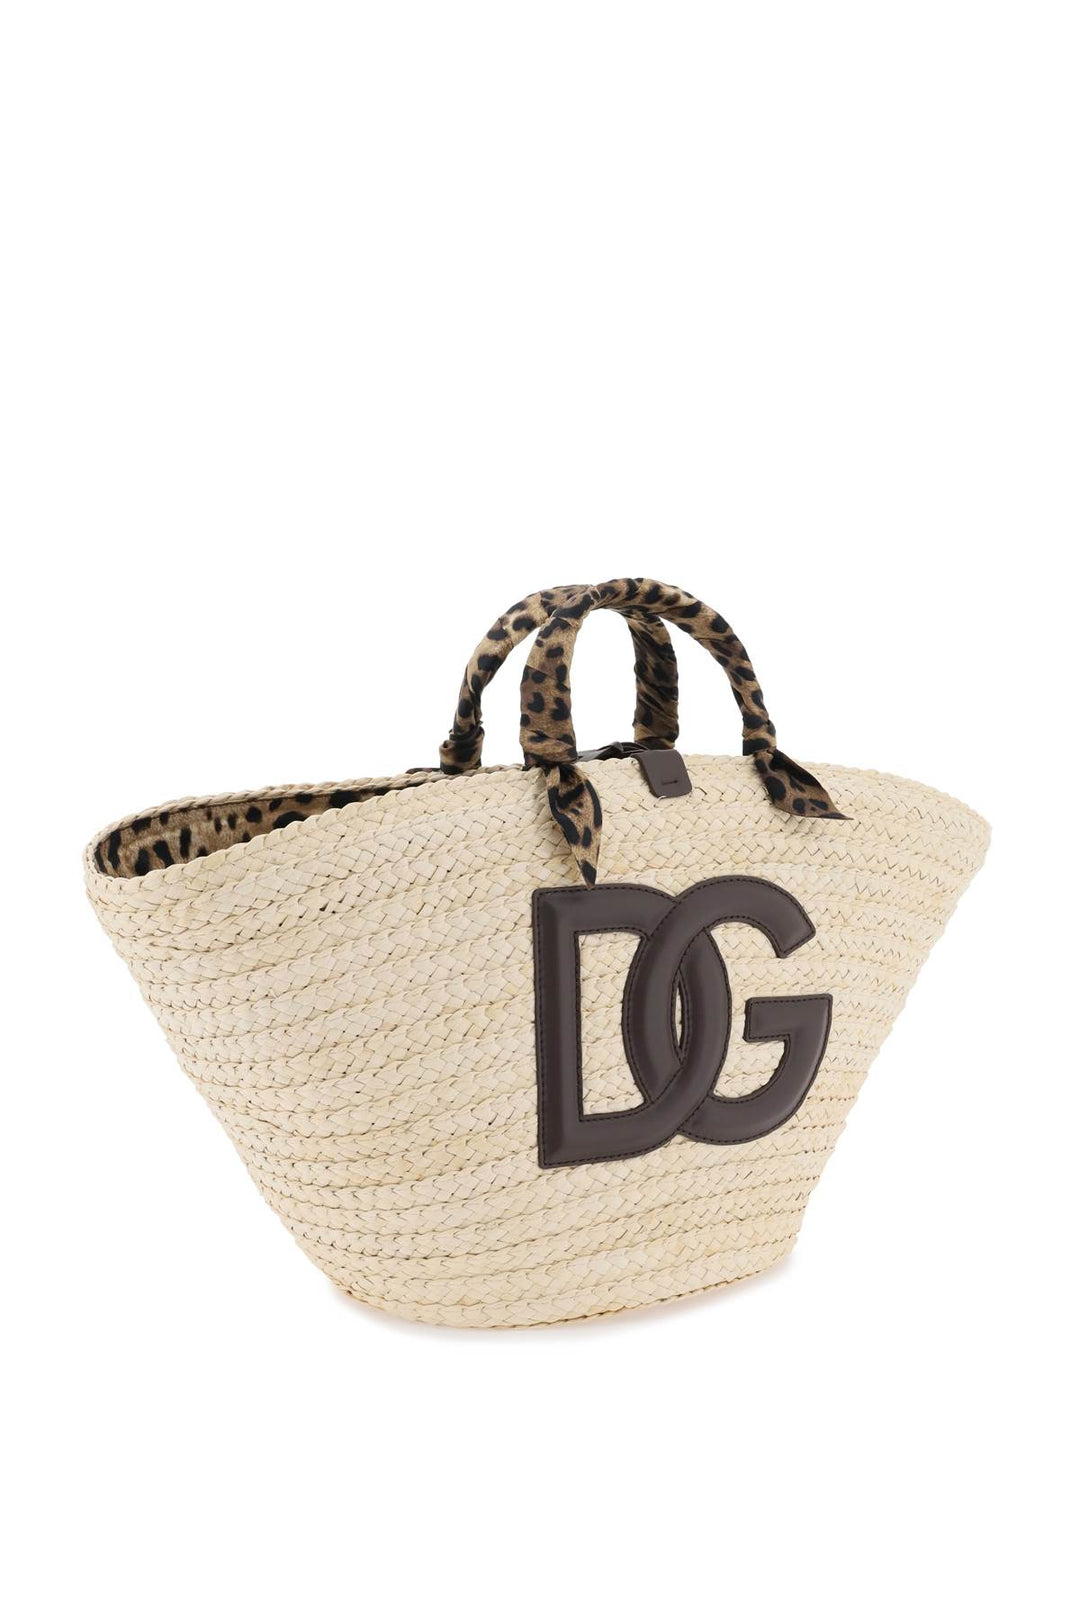 Dolce & Gabbana Kendra Tote Bag   Beige